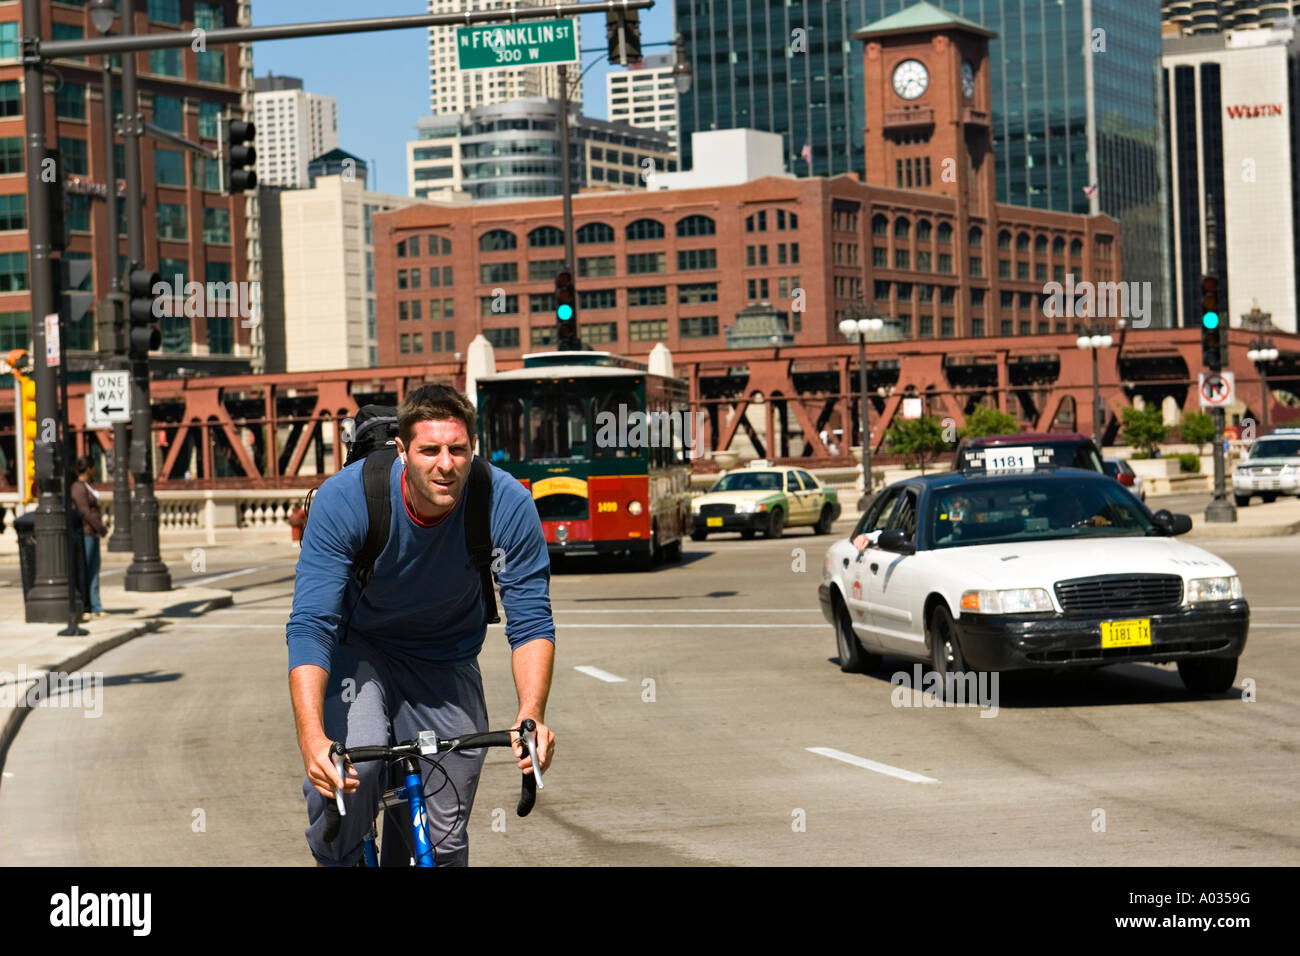 ILLINOIS Chicago uomo guidare la bicicletta senza casco su Wacker Drive occupato carreggiata in tram per il centro e il traffico dei veicoli Foto Stock